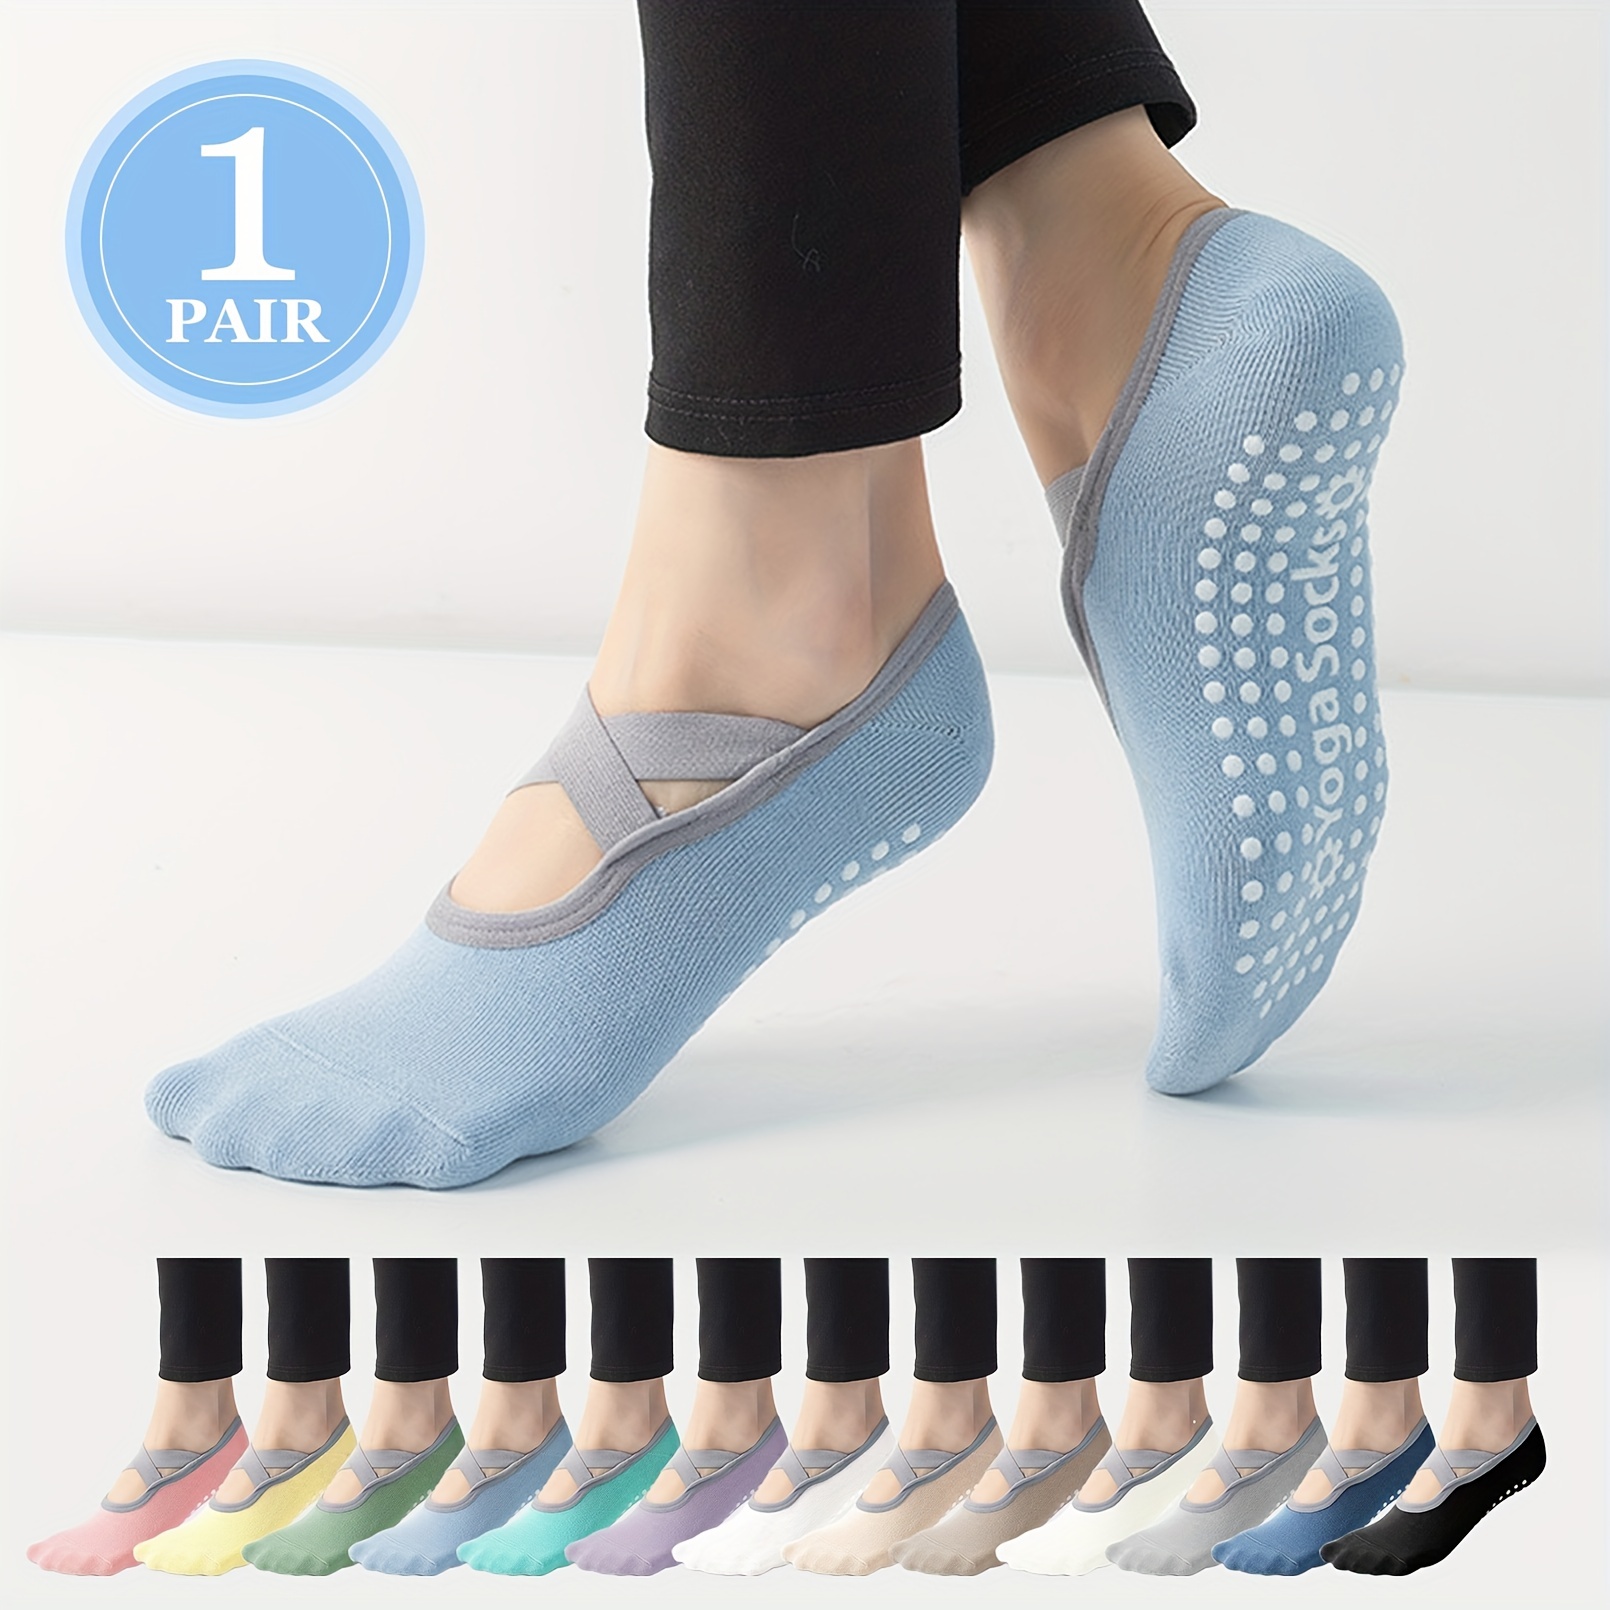 Yoga Socks for Women Anti-Slip Grips and Straps Anti-Skid Fitness Socks Sock  Slippers for Yoga Pilates Ballet Barre Dance Socks 